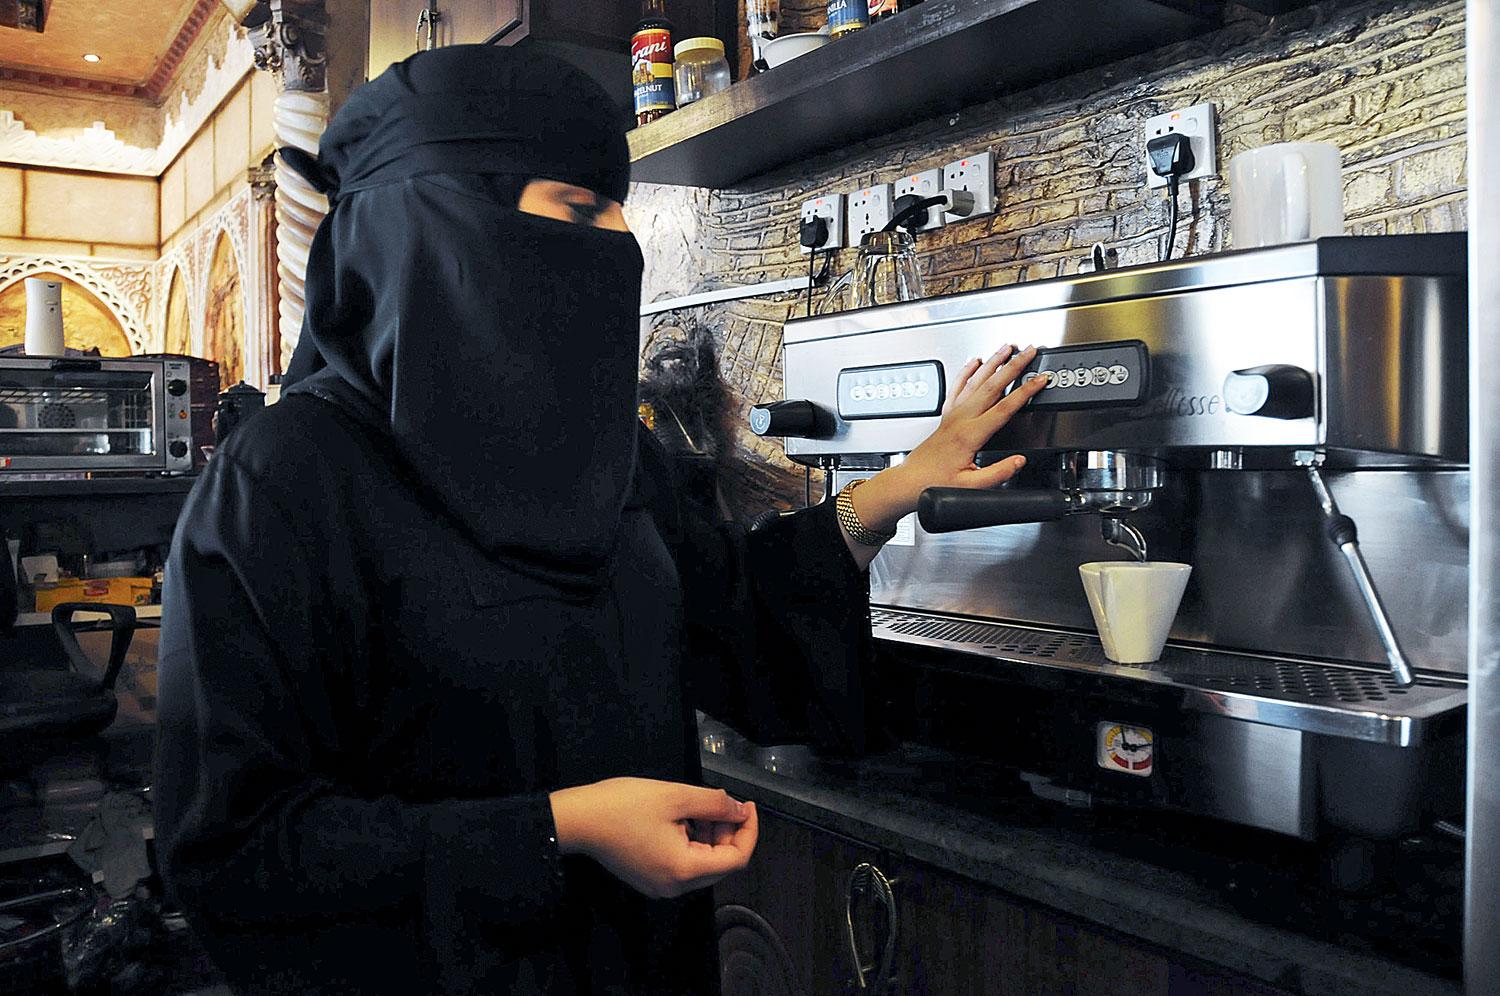  Nő készíti az eszpresszót egy kávézóban. Engedély kellett a férjétől, hogy dolgozhasson